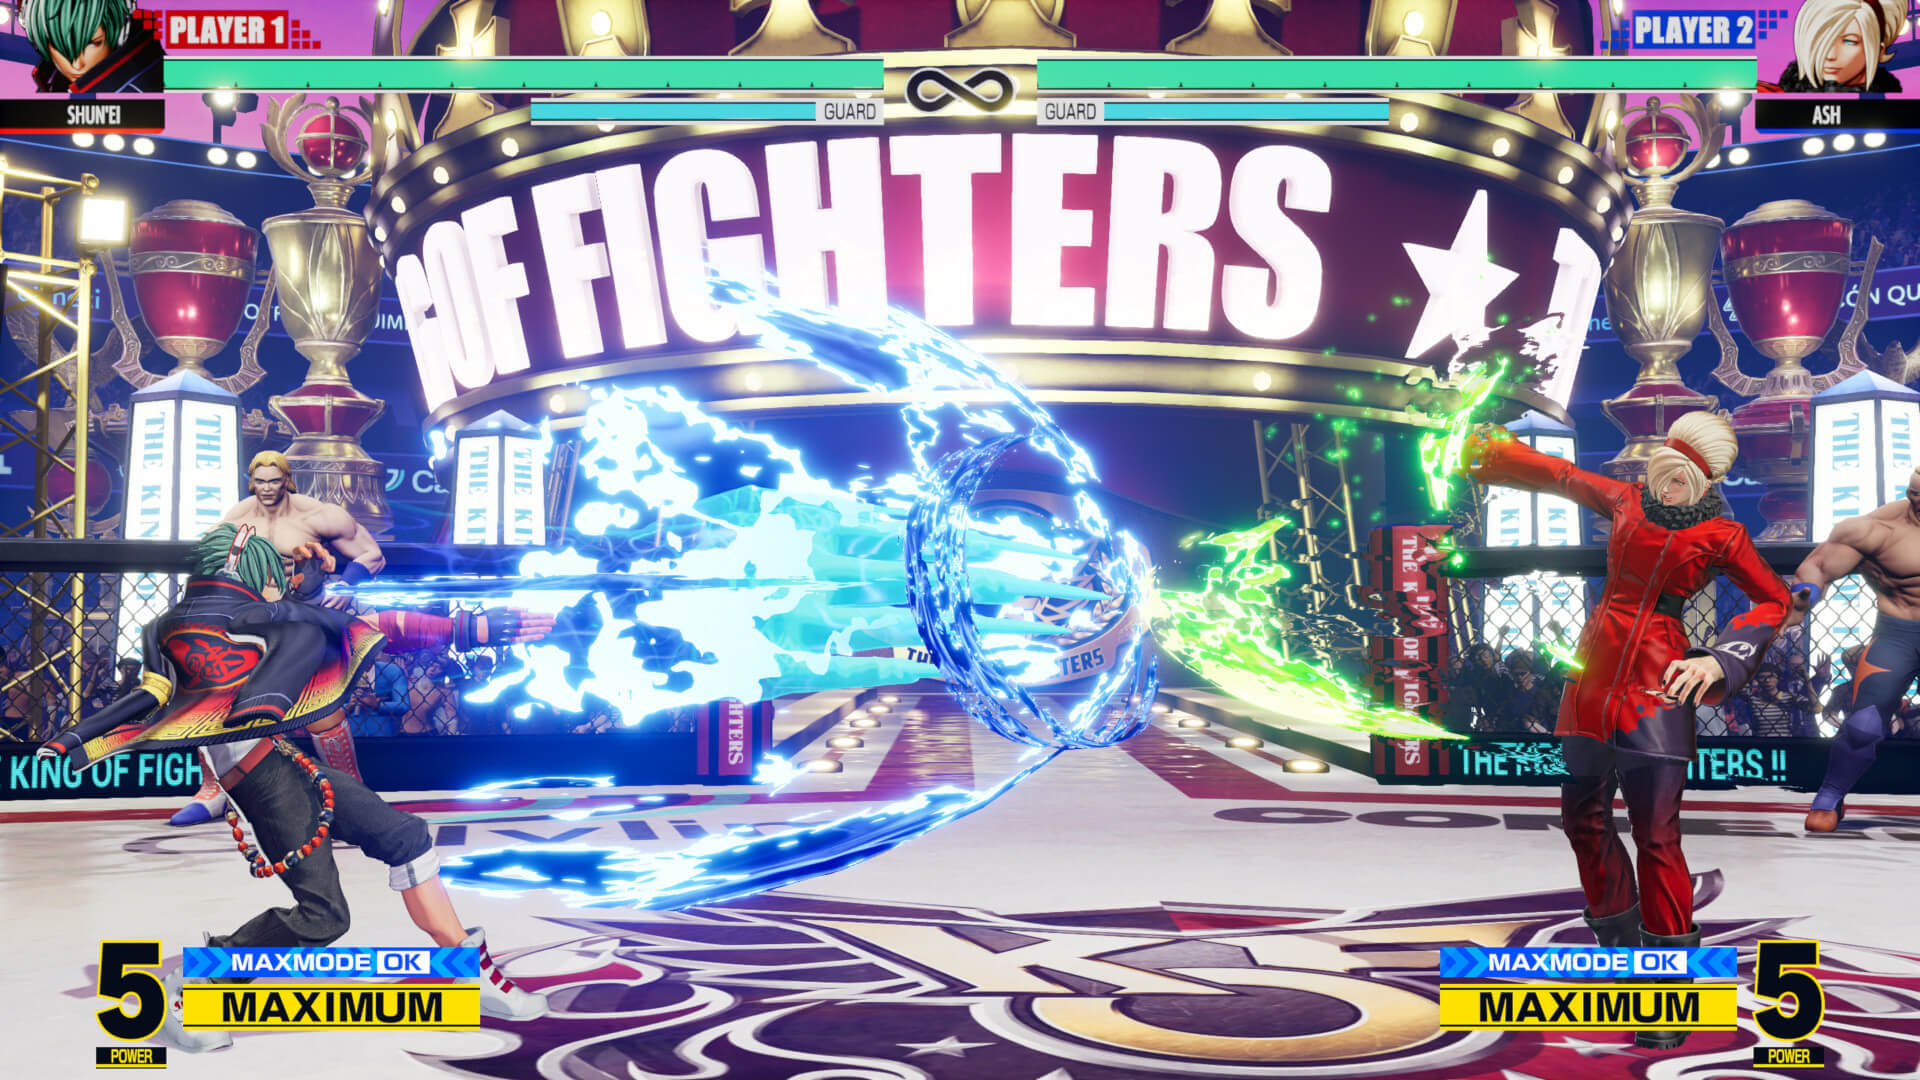 Shun'ei facing Ash in King of Fighters XV